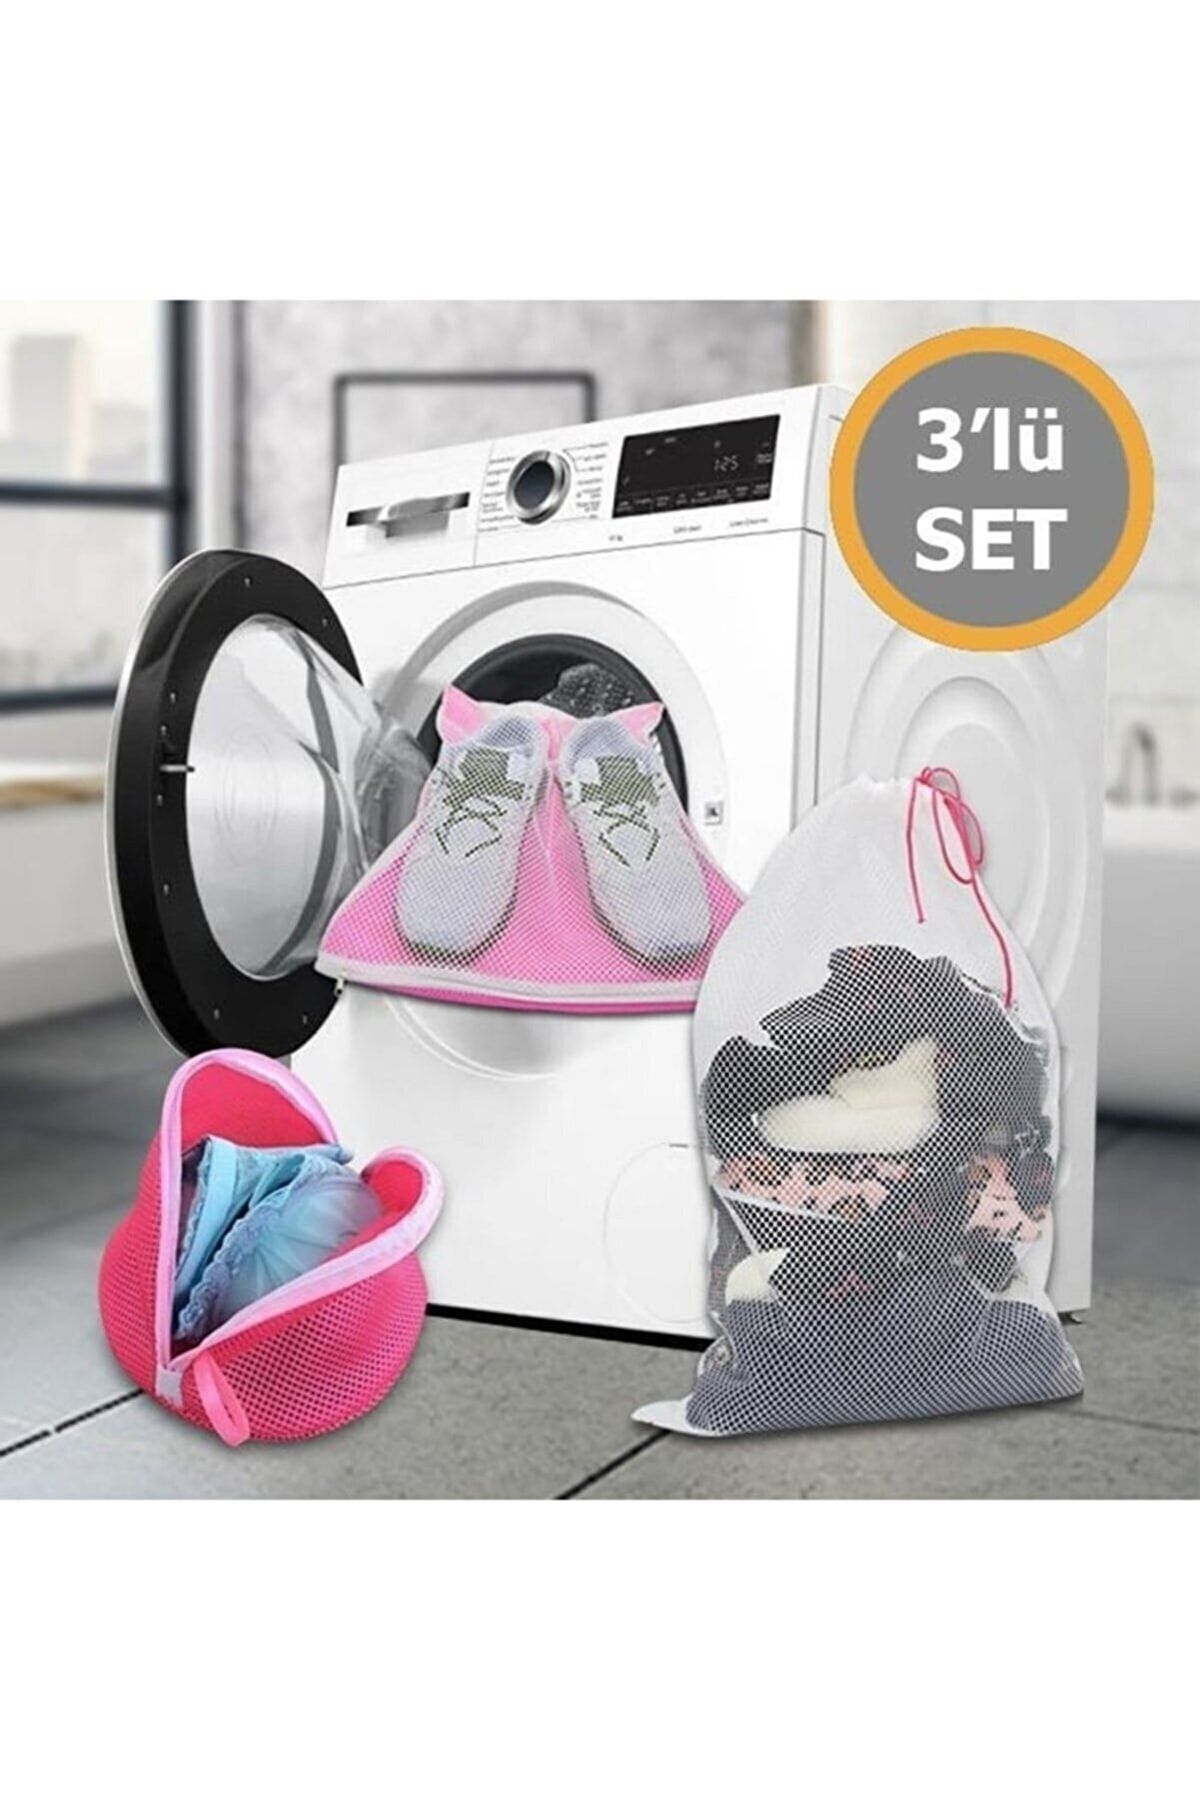 MorBebe 3lü Set Çamaşır Sütyen Ayakkabı Yıkama Filesi Çamaşır Yıkama Filesi